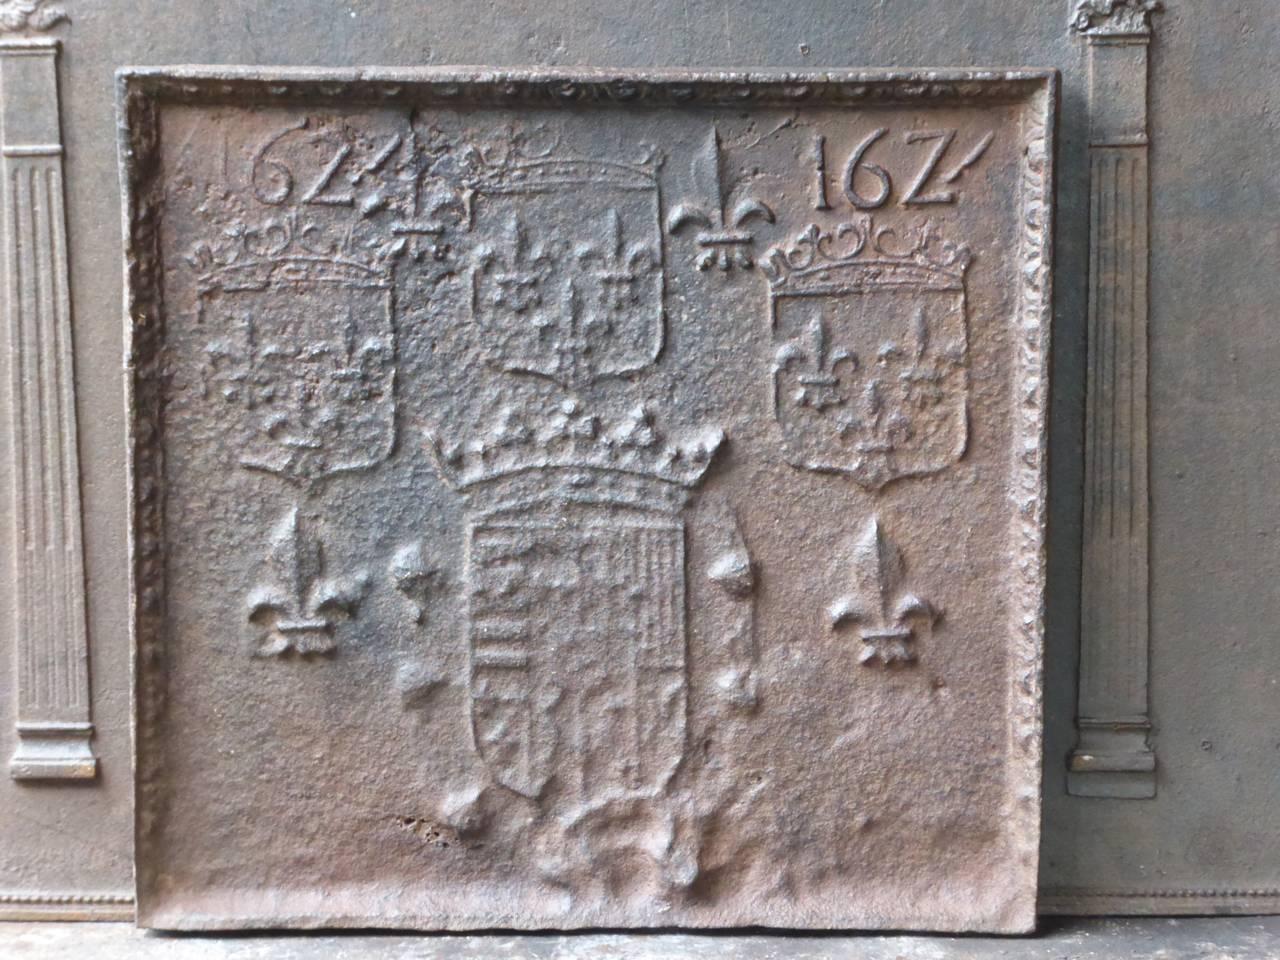 Plaque de cheminée française avec plusieurs armoiries de France et des fleurs de lys. La date de production de la plaque de cheminée, 1624, est également gravée dans la plaque.

La plaque de cheminée est en fonte et a une patine brune naturelle. Sur